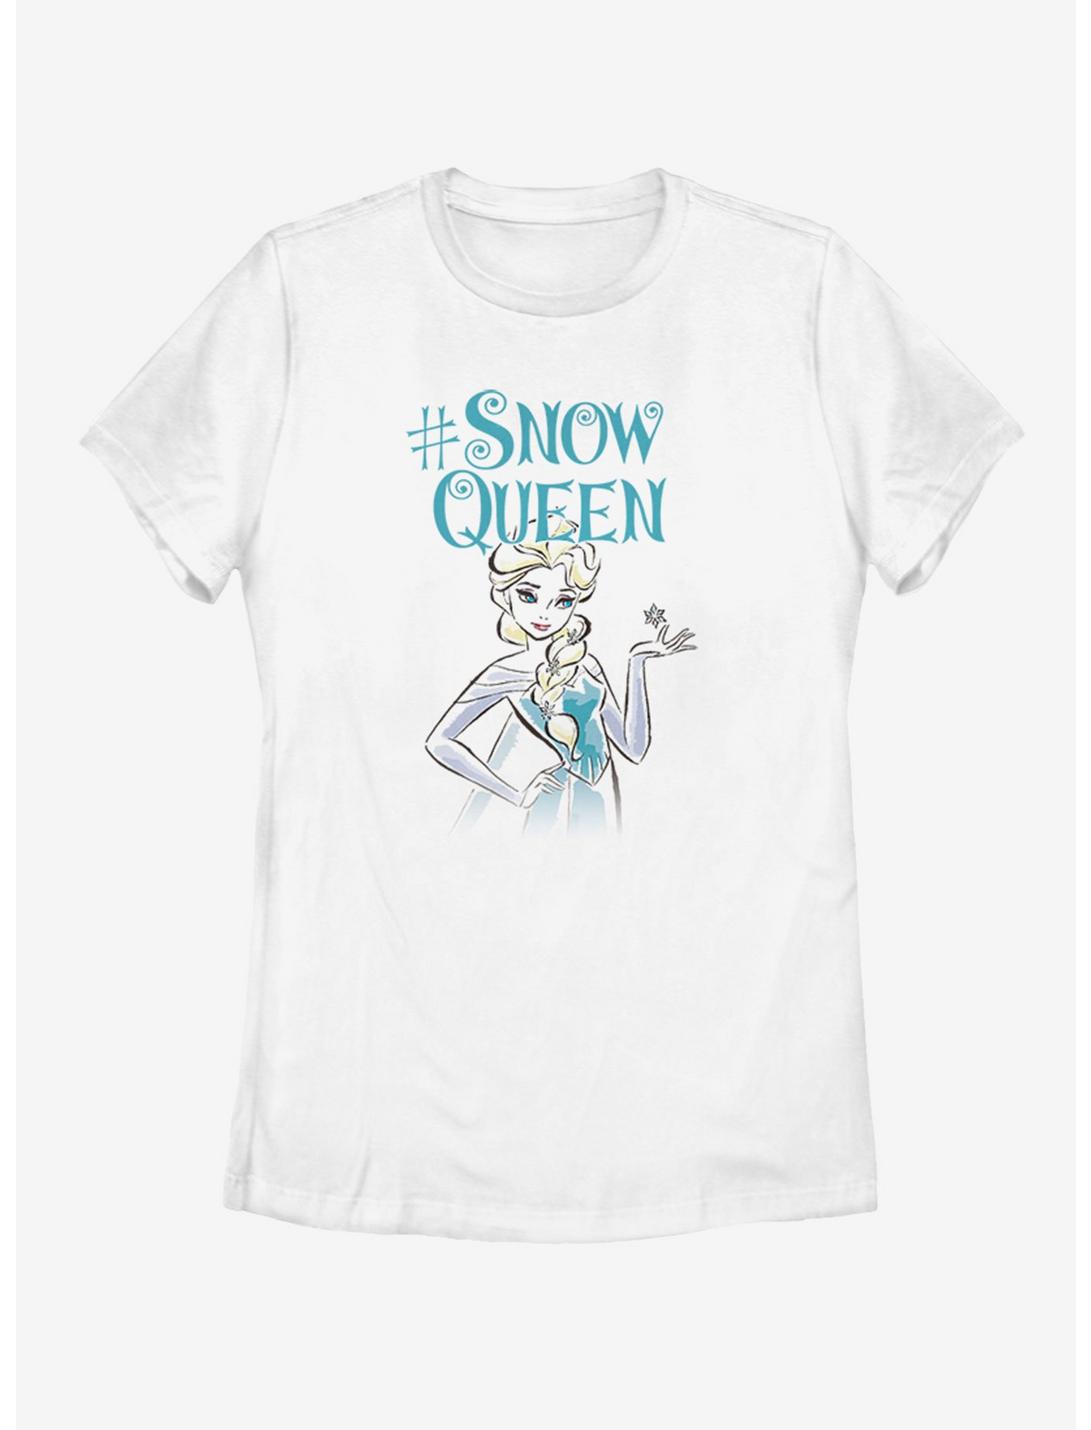 Plus Size Disney Frozen Elsa Queen Womens T-Shirt, WHITE, hi-res